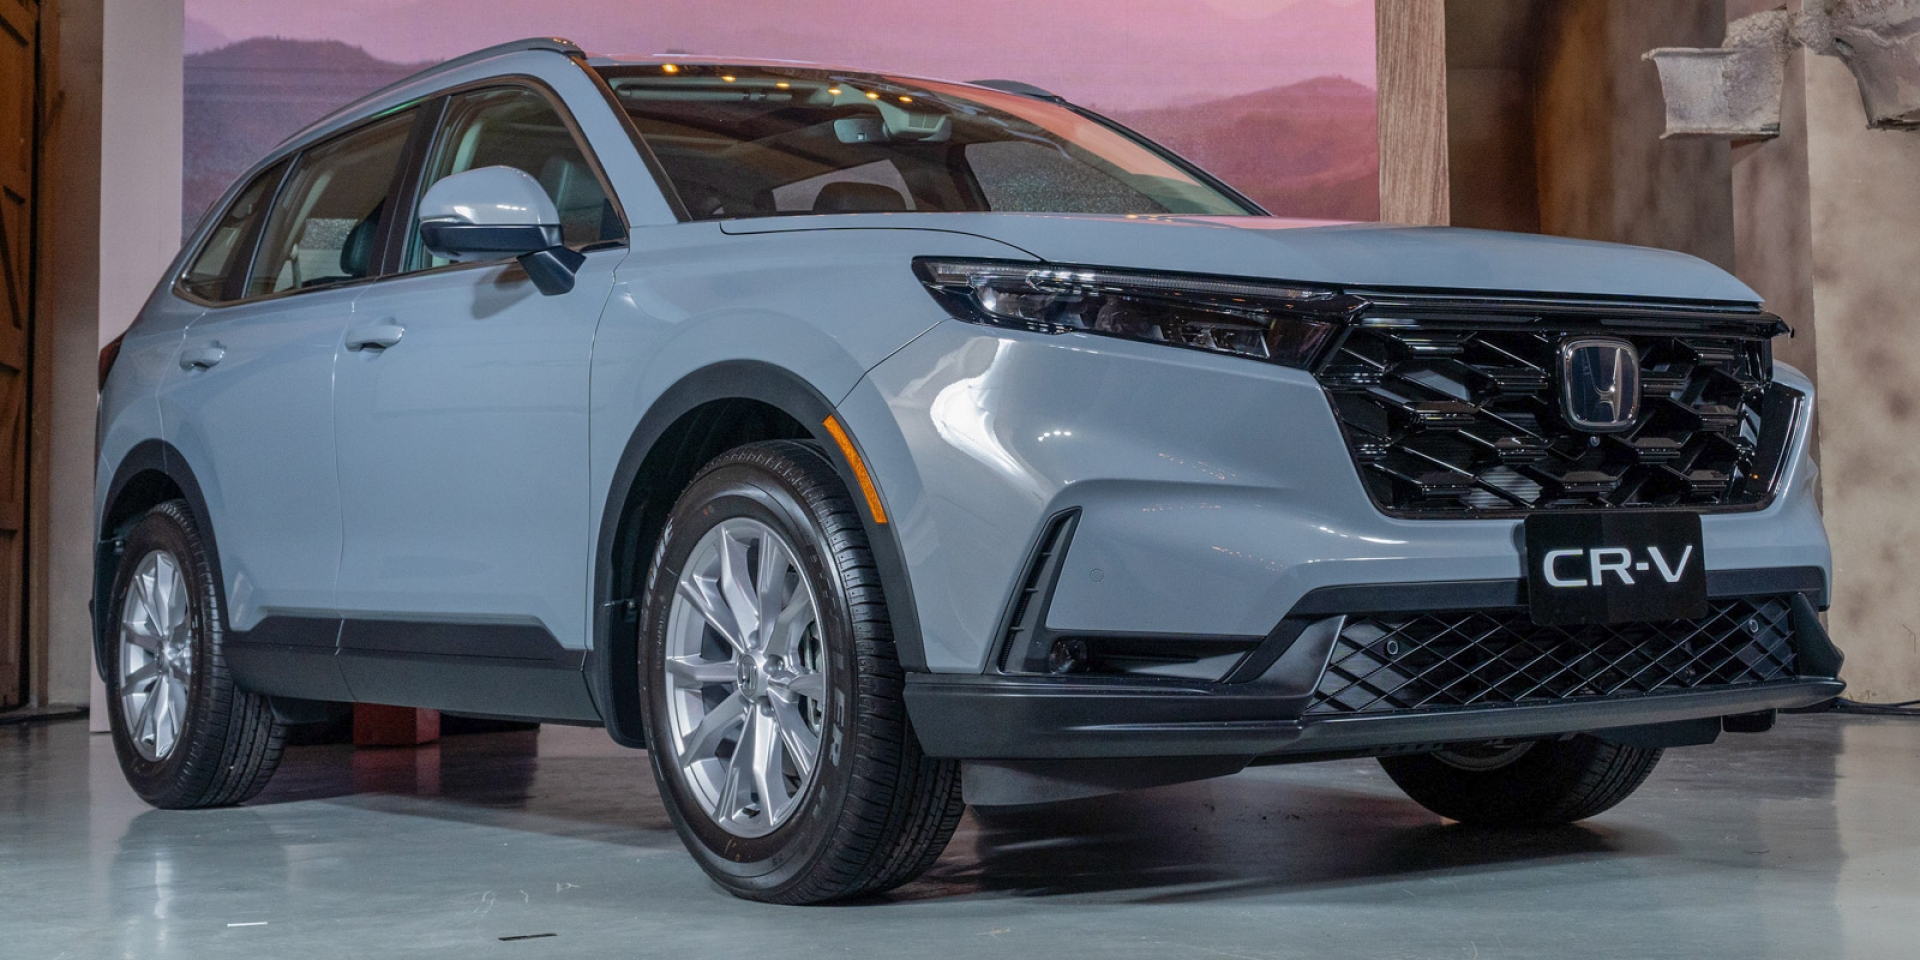 All-New CR-V開啟優雅自信的嶄新旅程  樹立SUV領航典範 預接單售價108萬元起